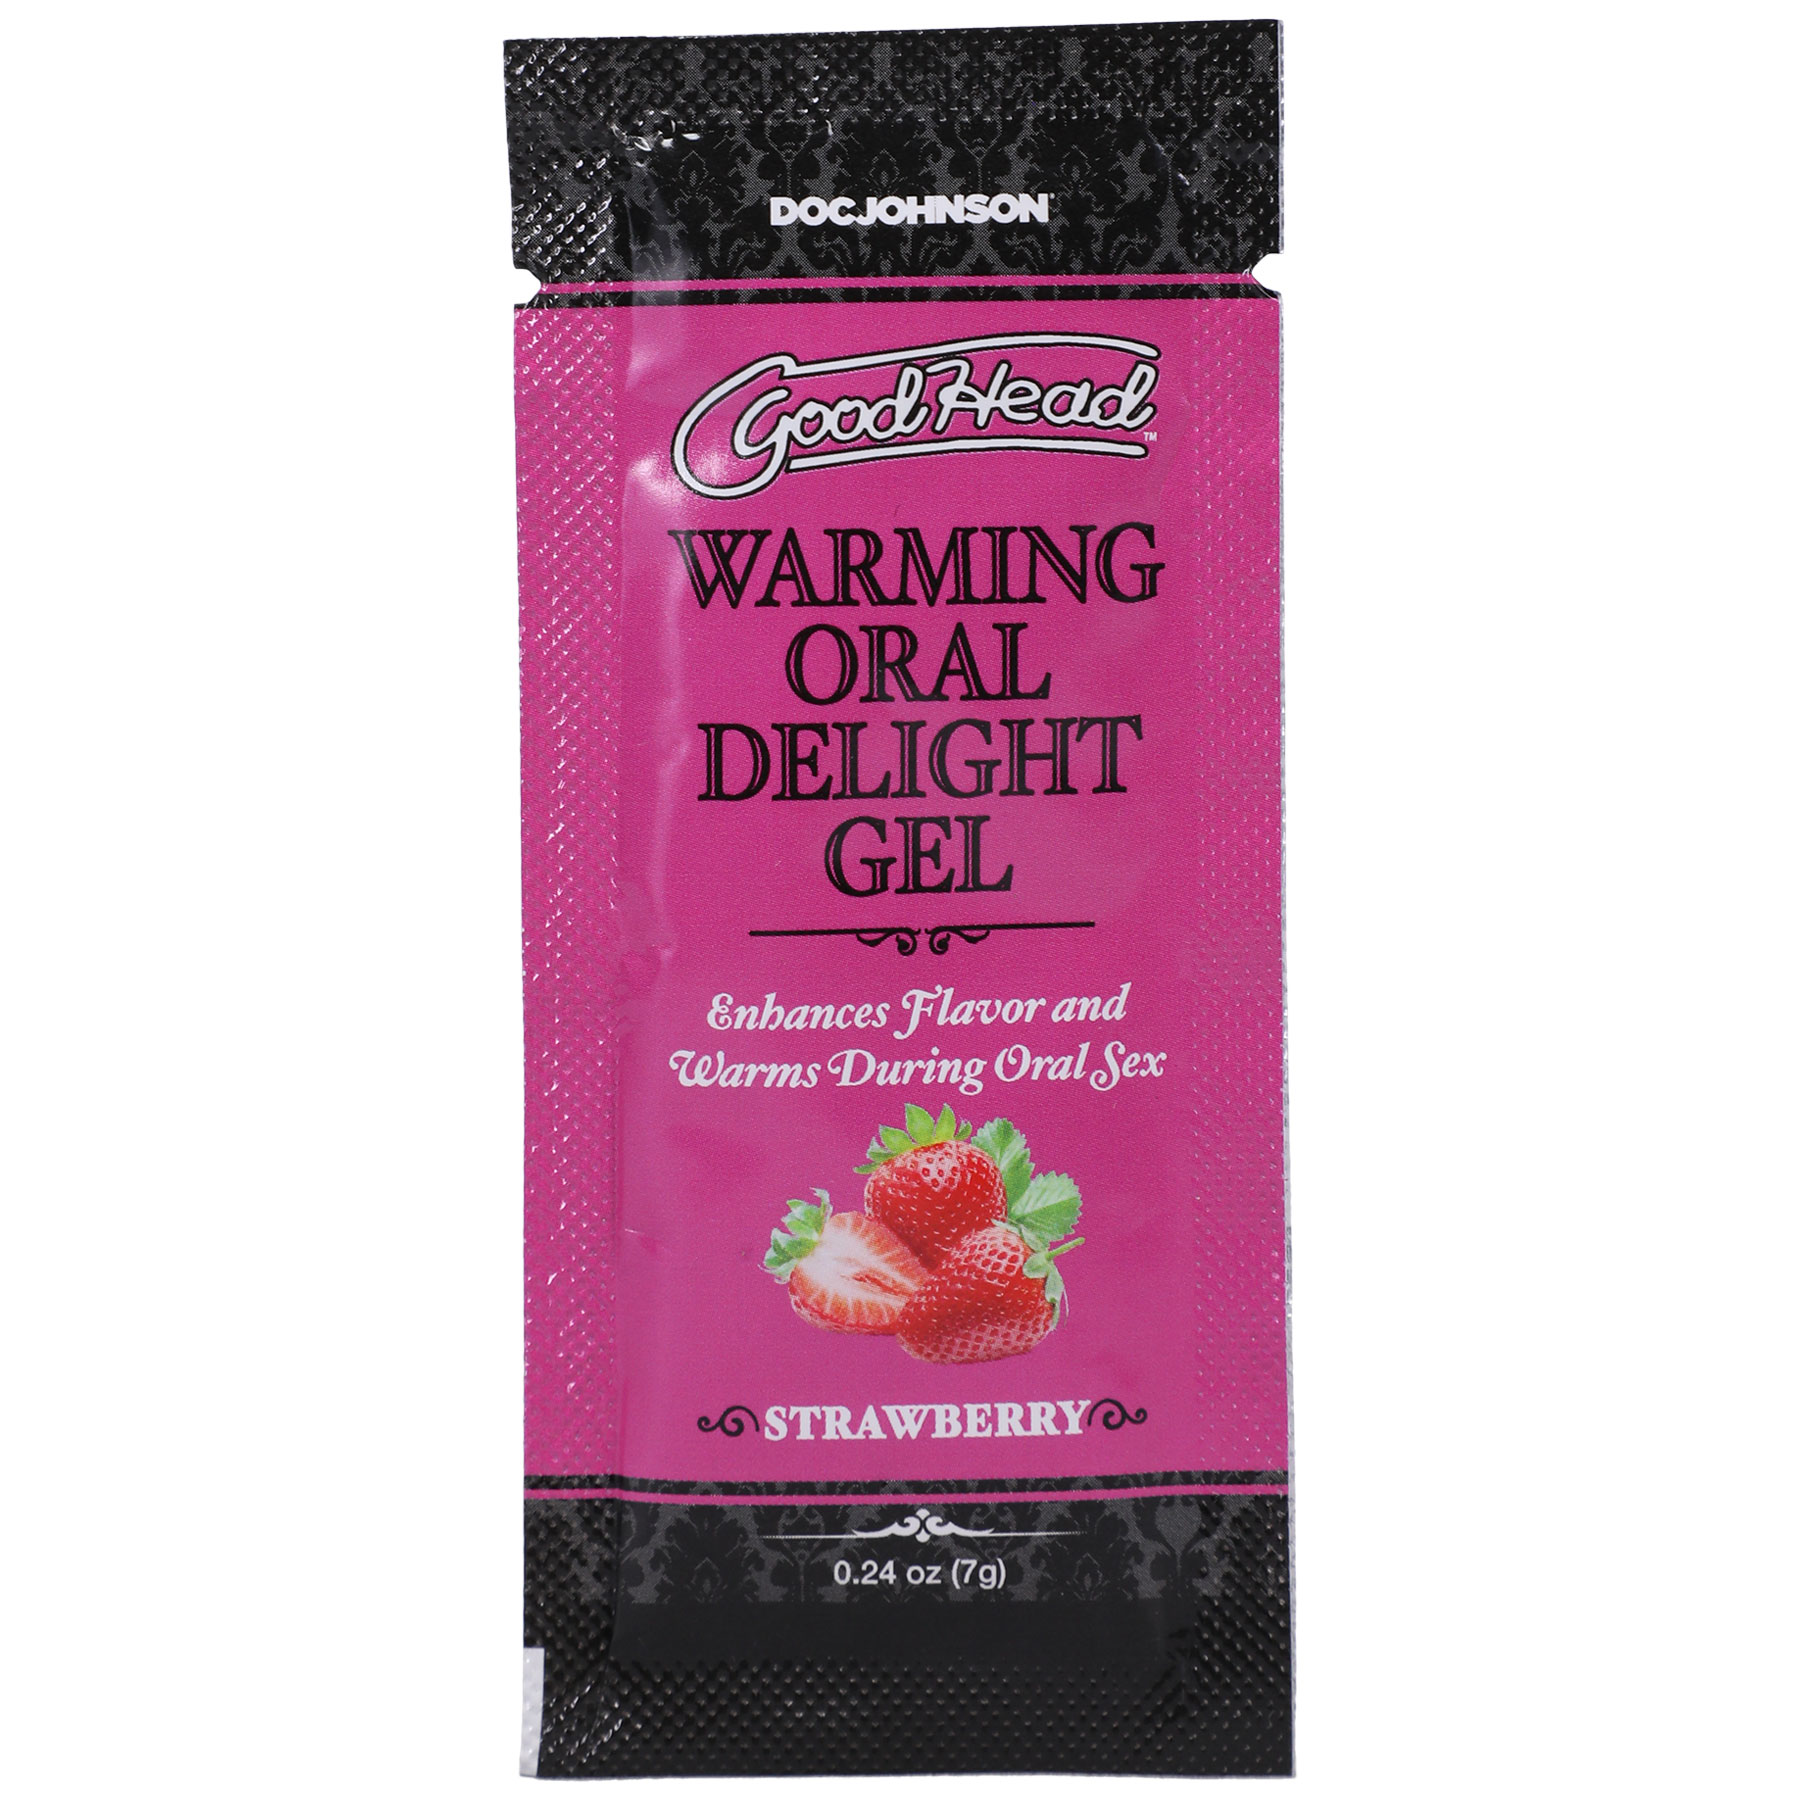 goodhead warming oral delight gel strawberry . oz 